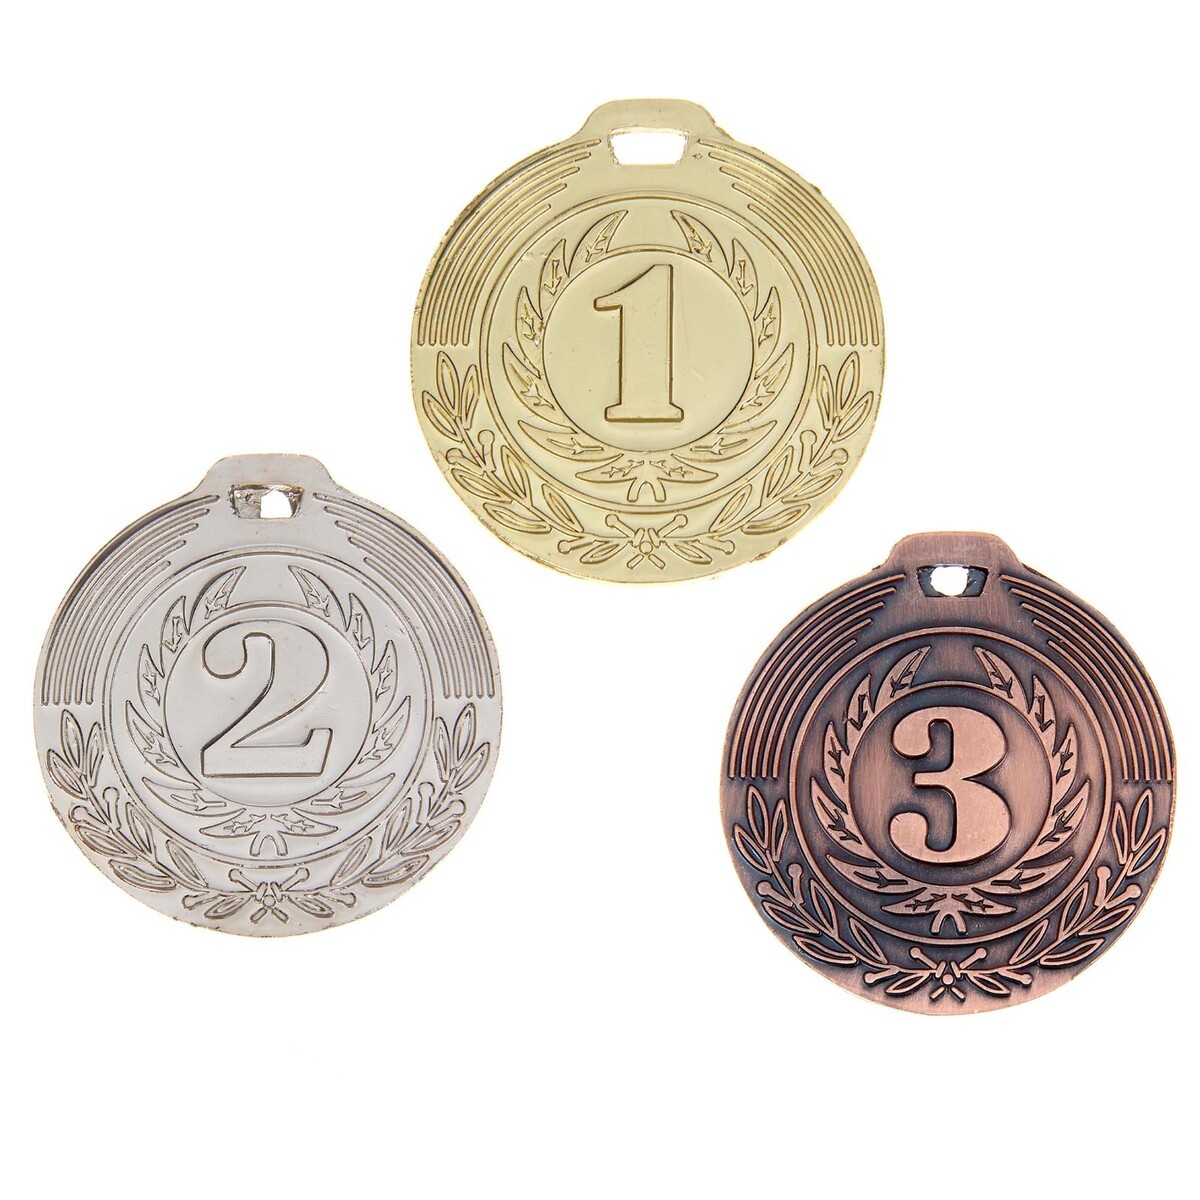 Медаль призовая 021 диам 4 см. 3 место. цвет бронз. без ленты медаль призовая 021 диам 4 см 3 место бронз без ленты